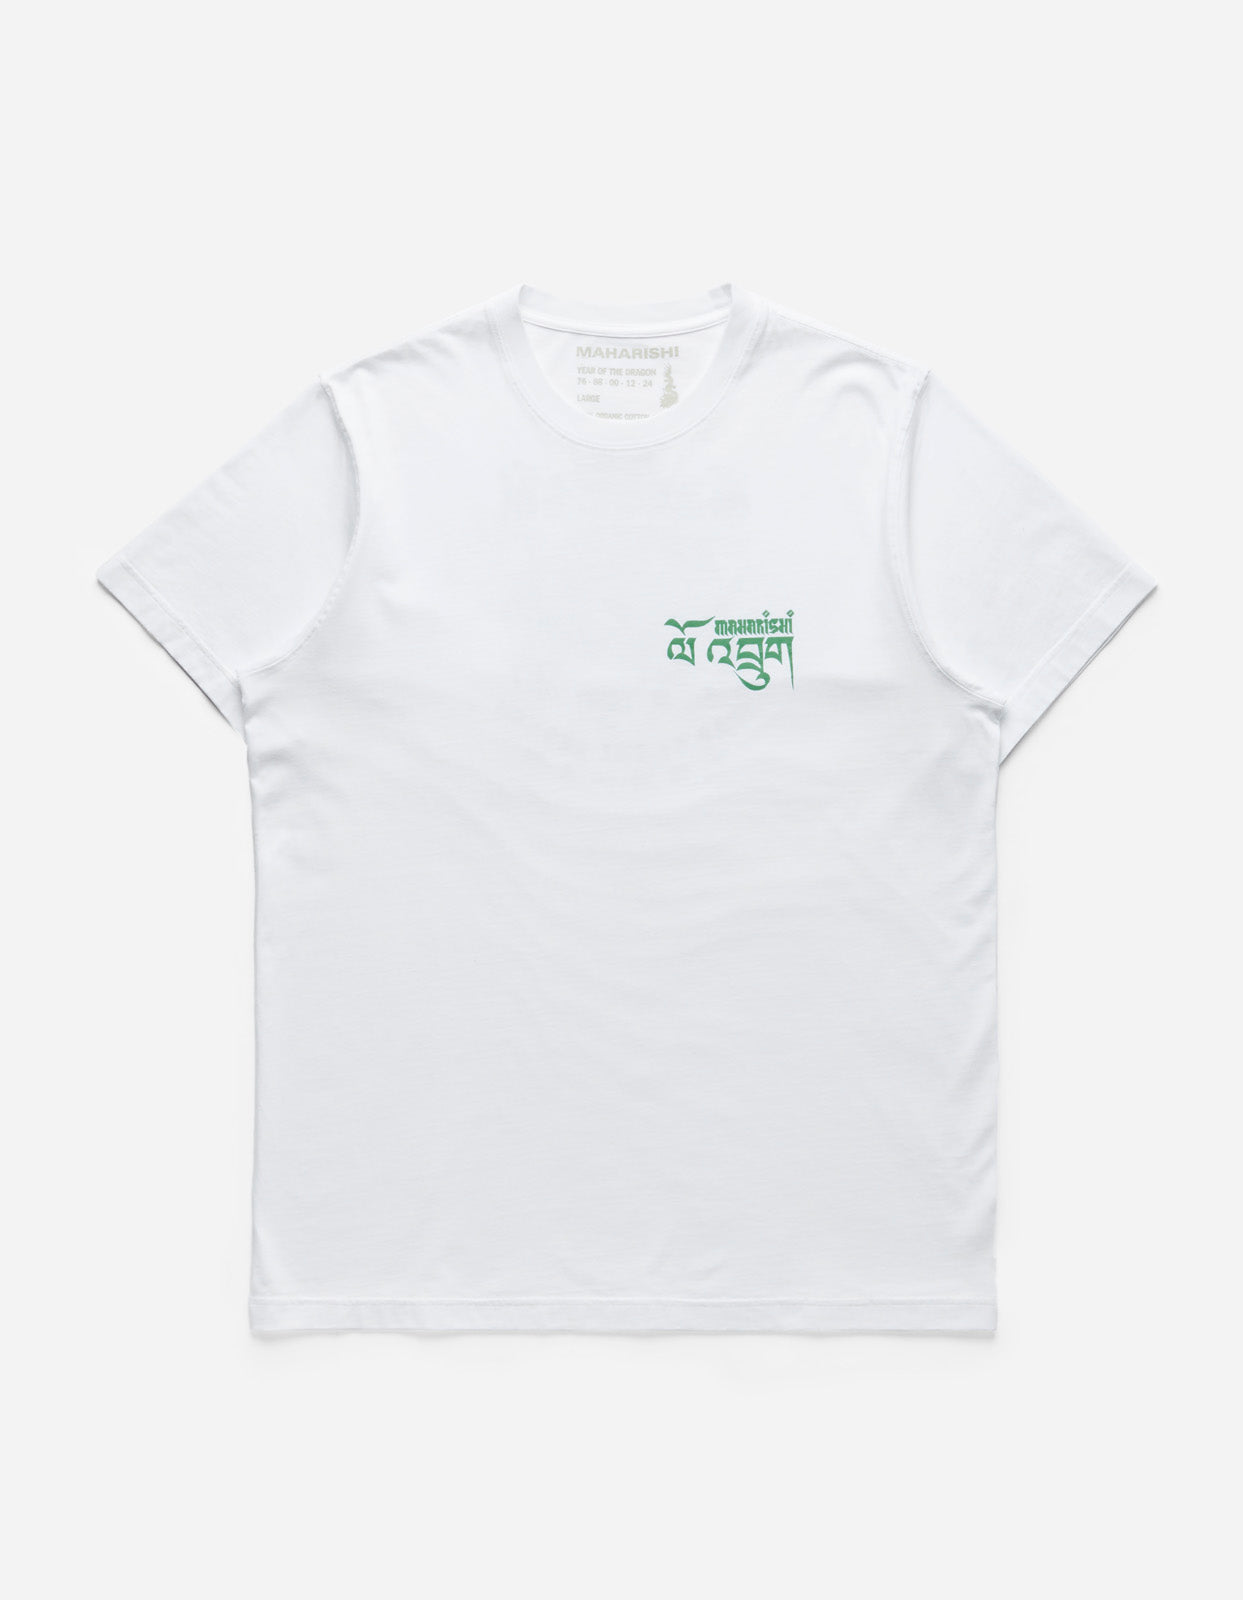 1258 Abundance Dragon Tour T-Shirt White